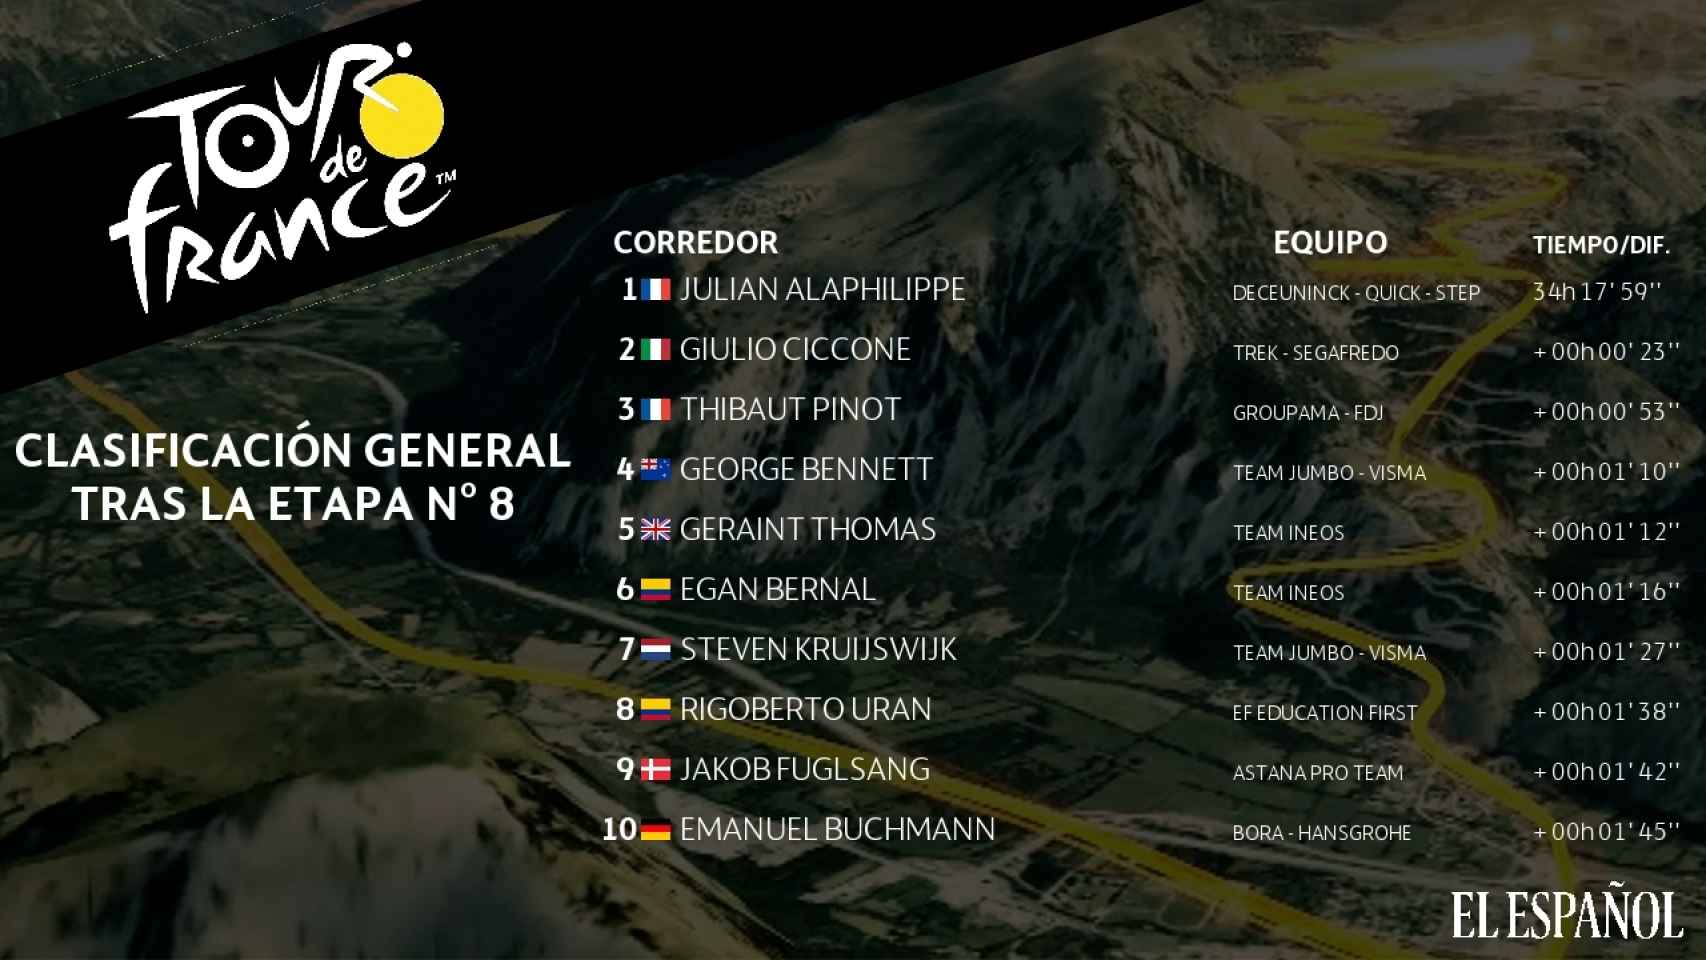 Clasificación general del Tour de Francia 2019 tras la 8ª etapa